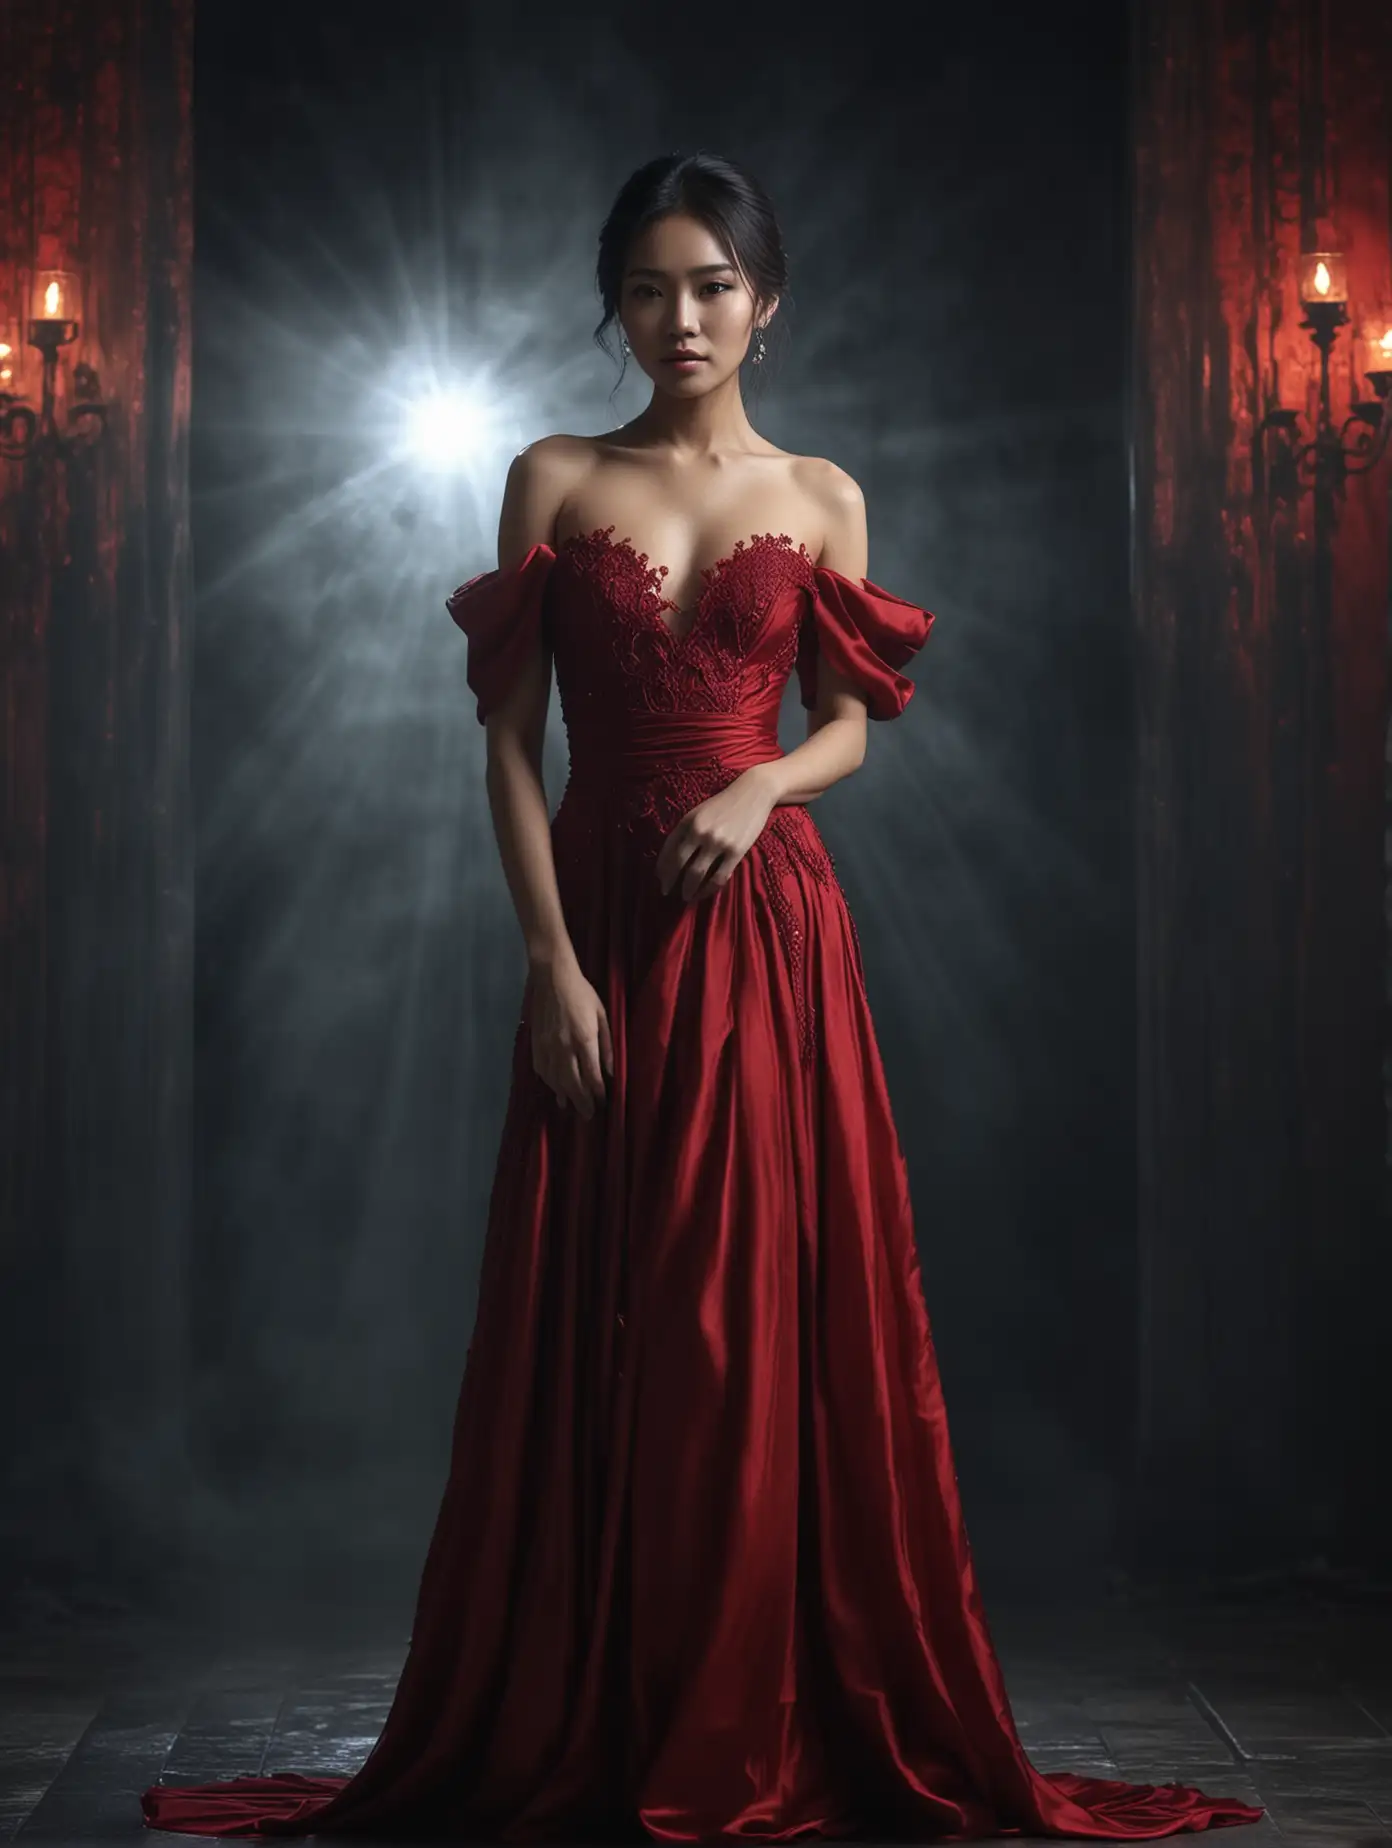 Elegant Thai Model in Red Gown Against a Dark Atmospheric Backdrop in 4K HD